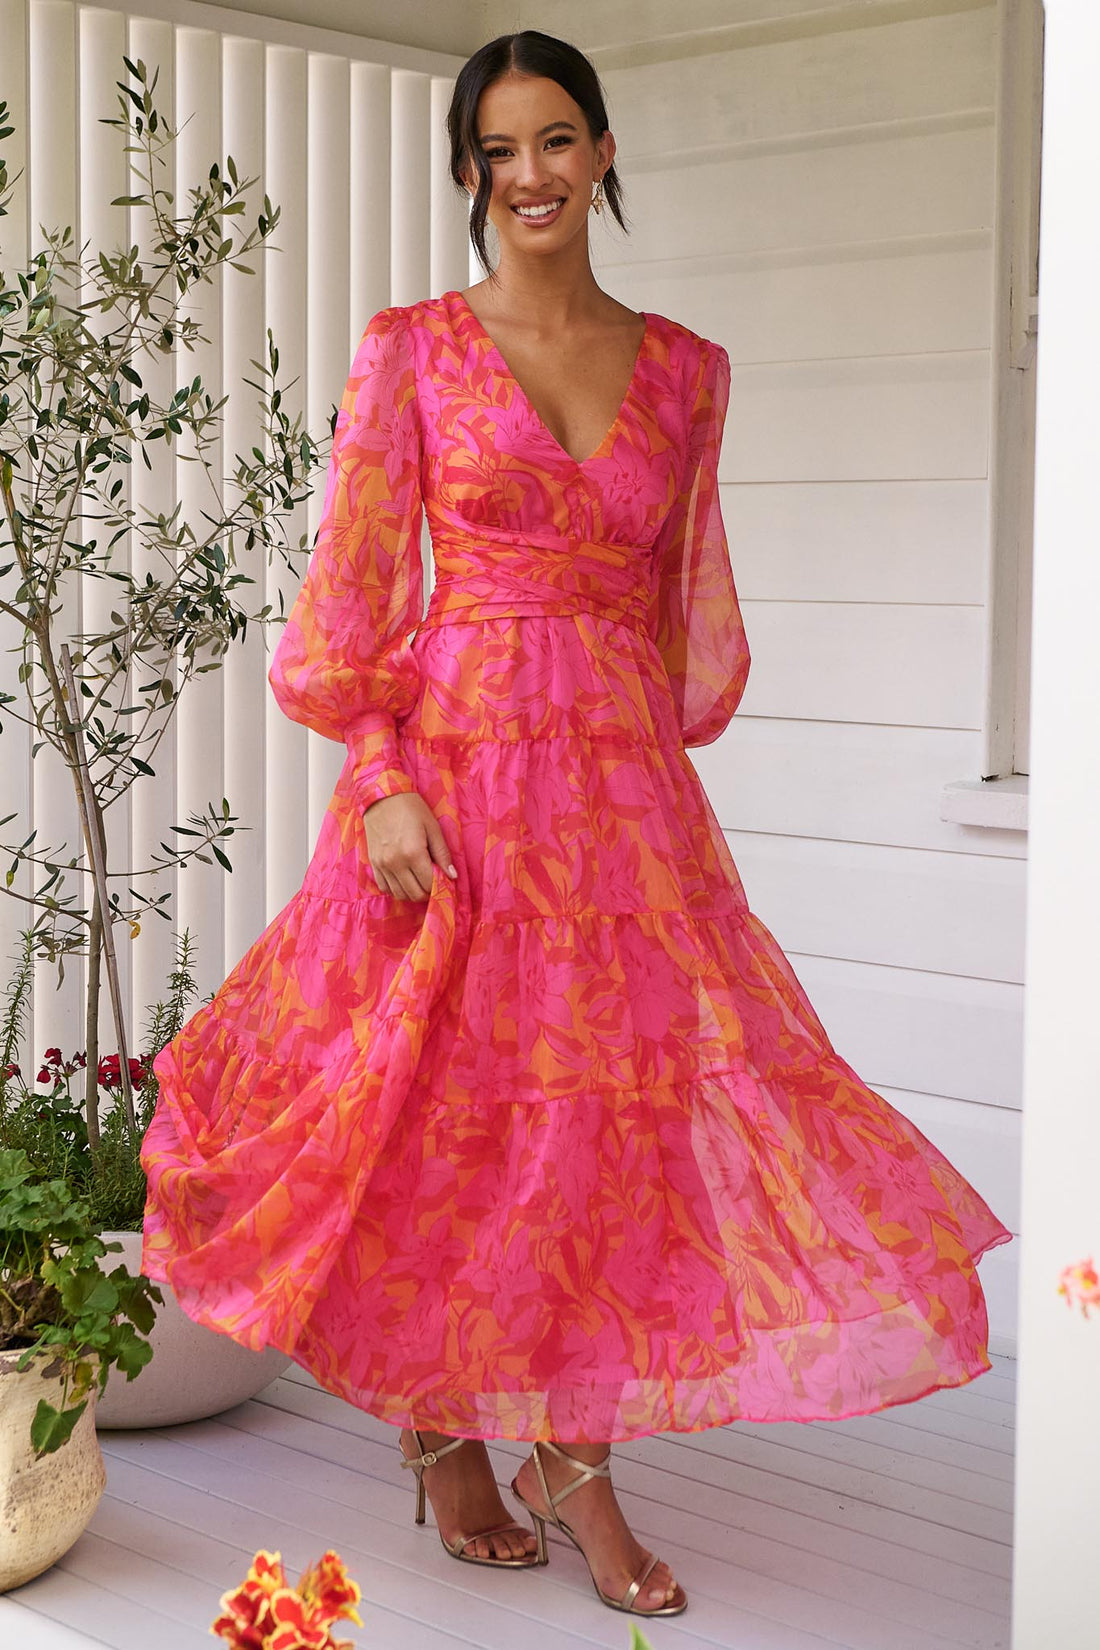 Sara Maxi Dress - Pink/Orange